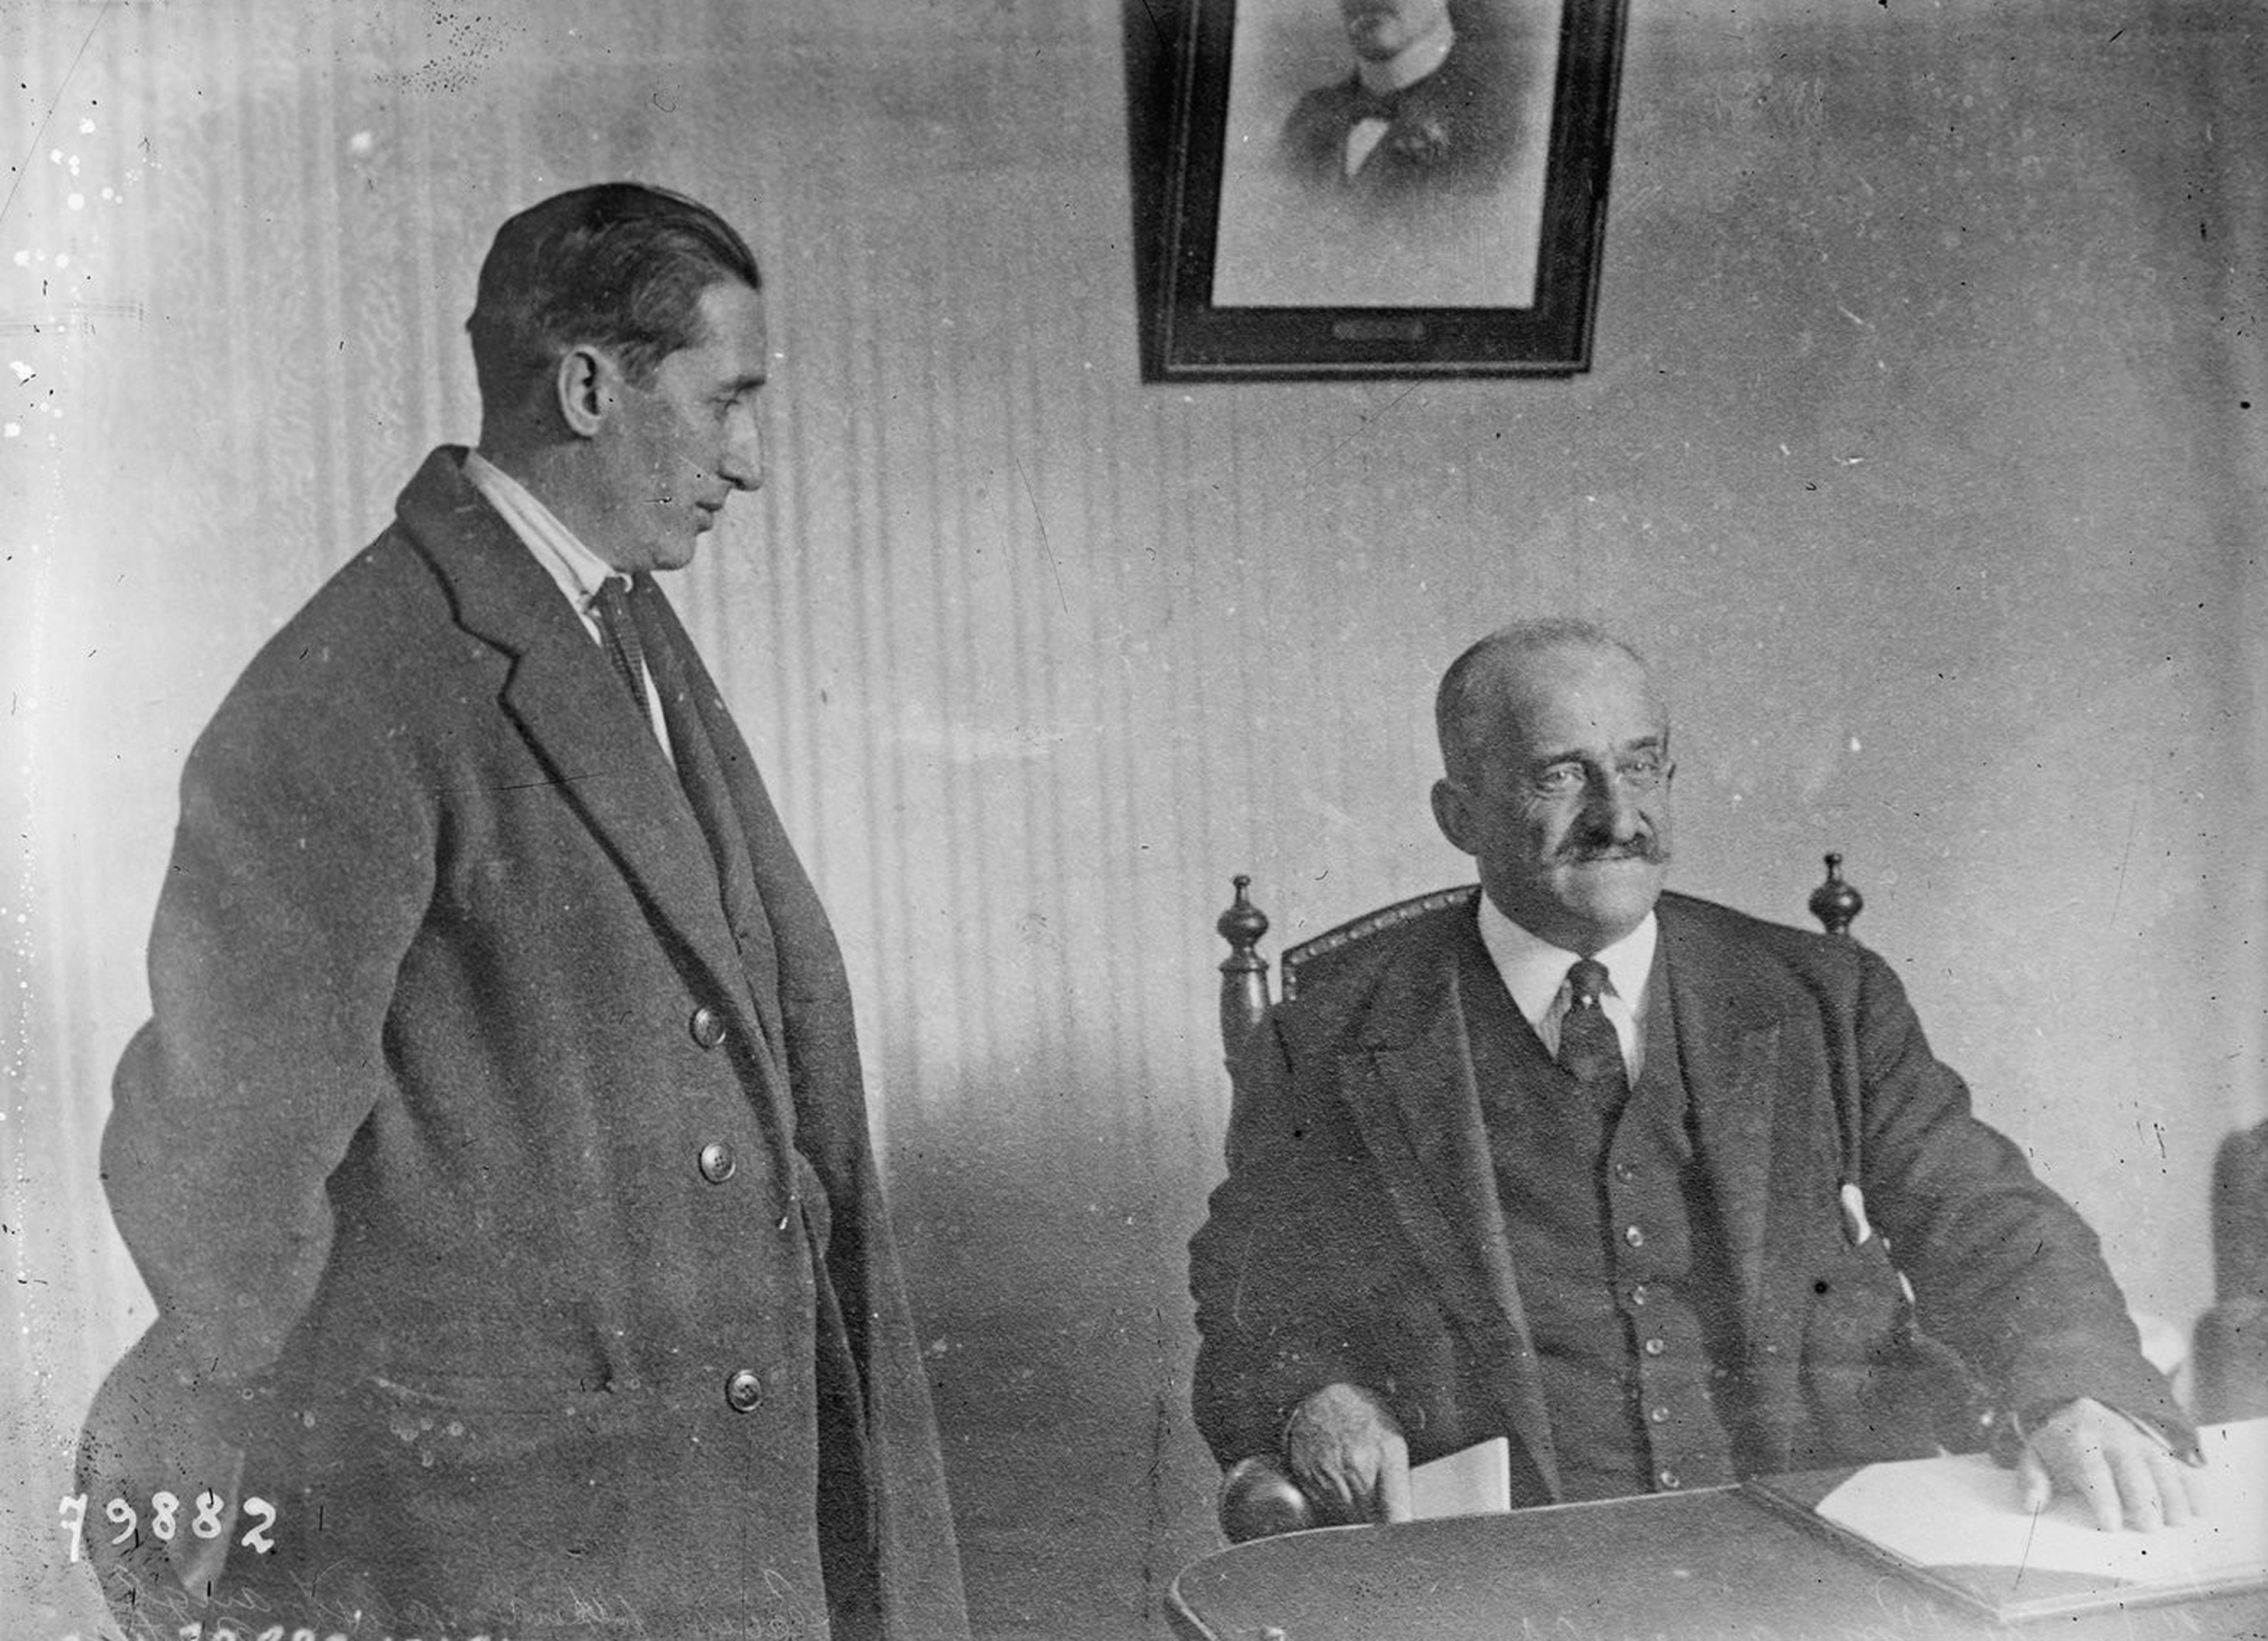 El líder sindicalista Ángel Pestaña y el conde de Romanones, uno de los principales políticos y empresarios de la época.